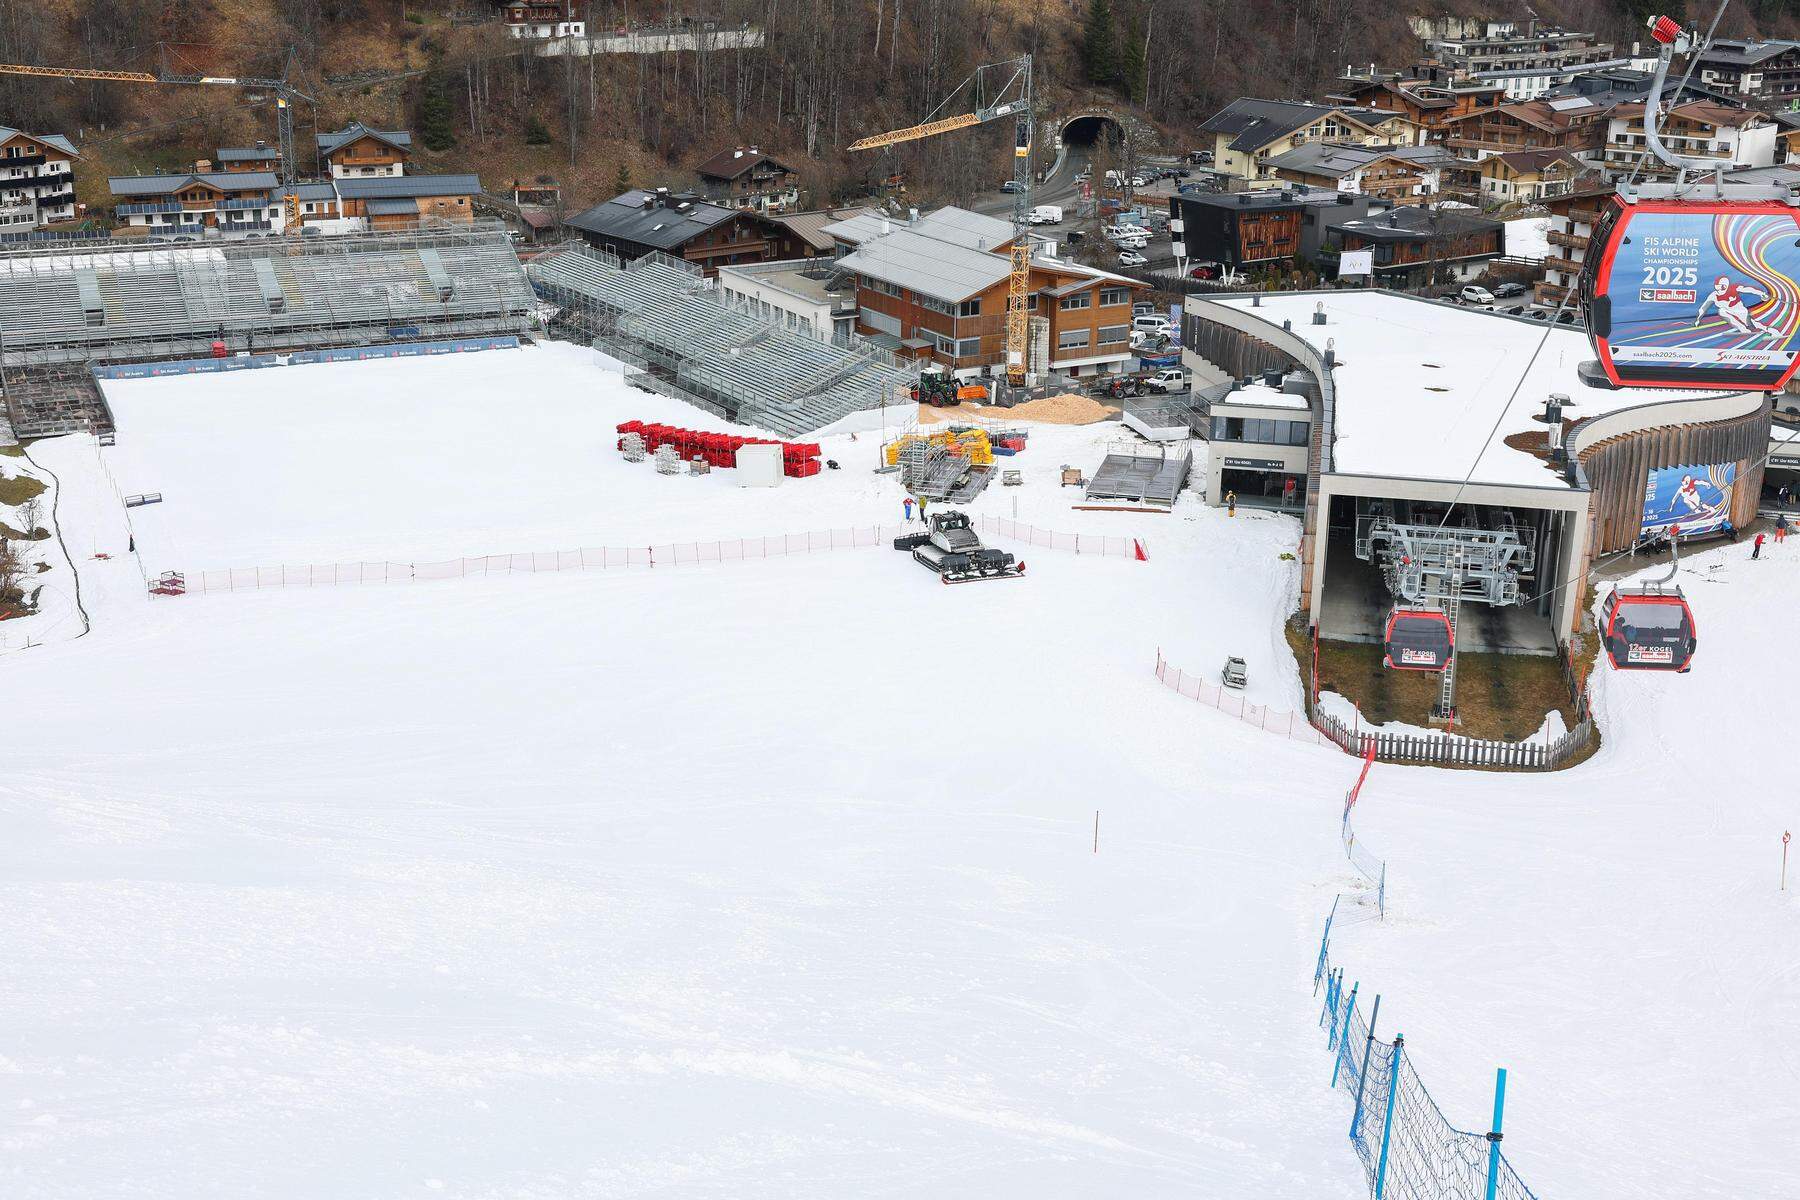 Ski alpin: Grünes Licht für Weltcup-Finale in Saalbach-Hinterglemm